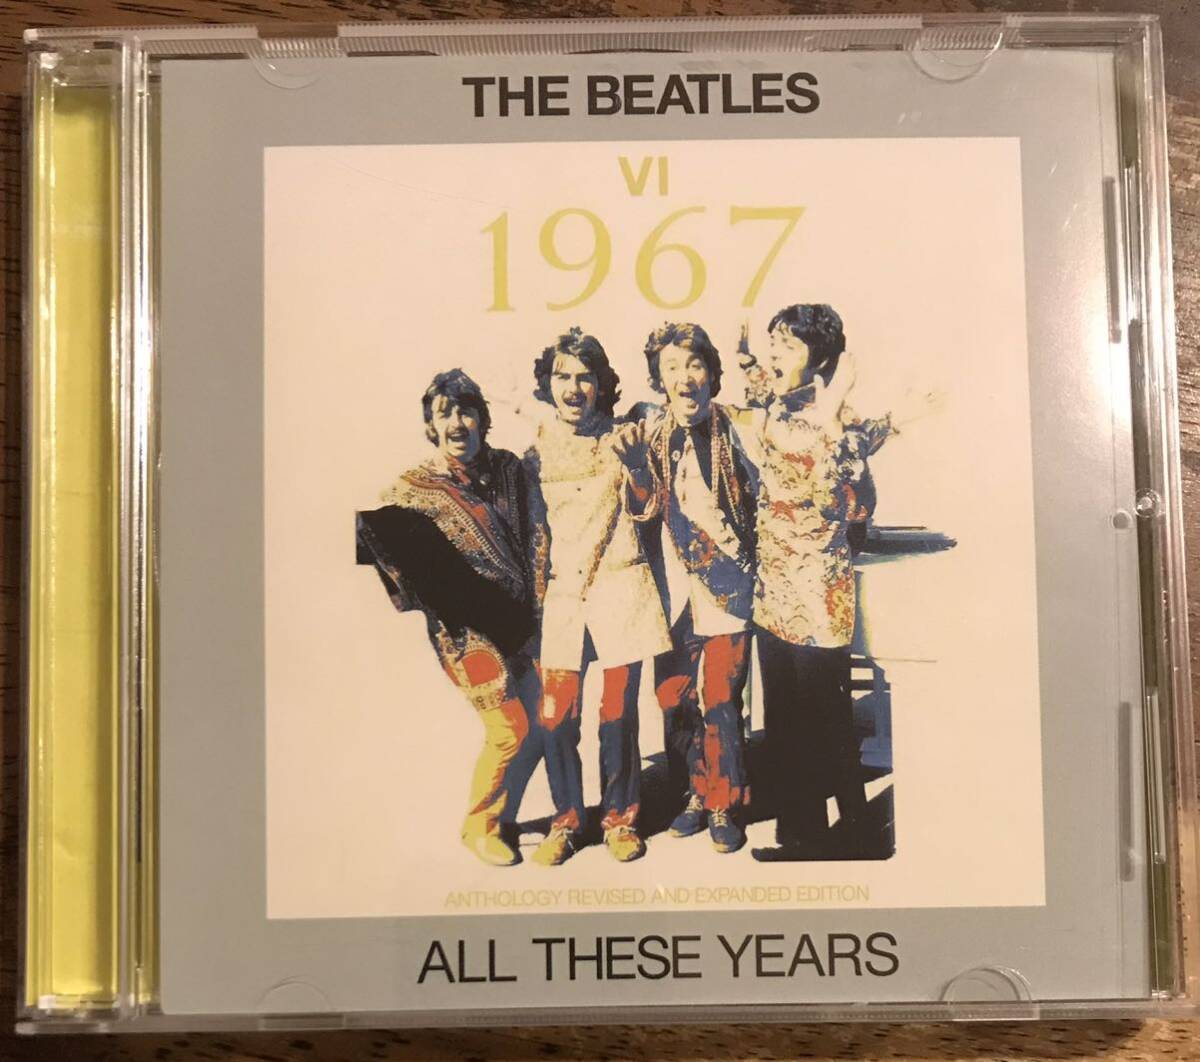 究極レアトラック集大成The Beatles / All These Years Ⅵ 1967: Anthology Revised And Expanded Edition: All Tracks Remix & Remaster_画像1